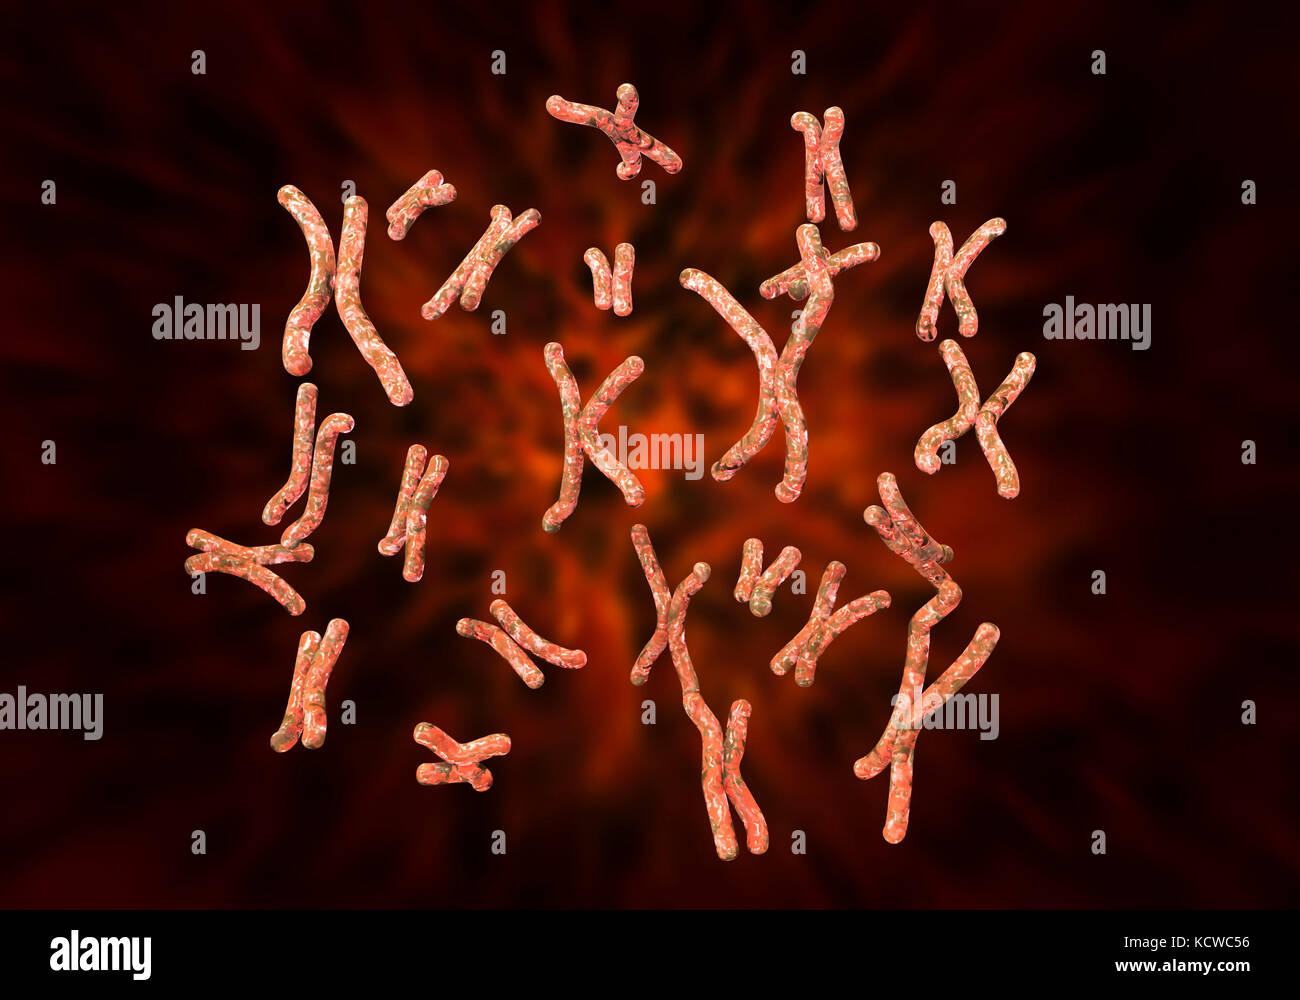 Conjunto de cromosomas humanos, equipo de ilustración. Los cromosomas son una forma envasada del material genético, el ADN (ácido desoxirribonucleico). El ADN se condensa en cromosomas durante la replicación celular para facilitar la división y transporte a la nueva celda. Un conjunto completo de cromosomas es conocido como cariotipo. En los seres humanos, hay 46 cromosomas, compuesto de 23 pares de cromosomas. Foto de stock